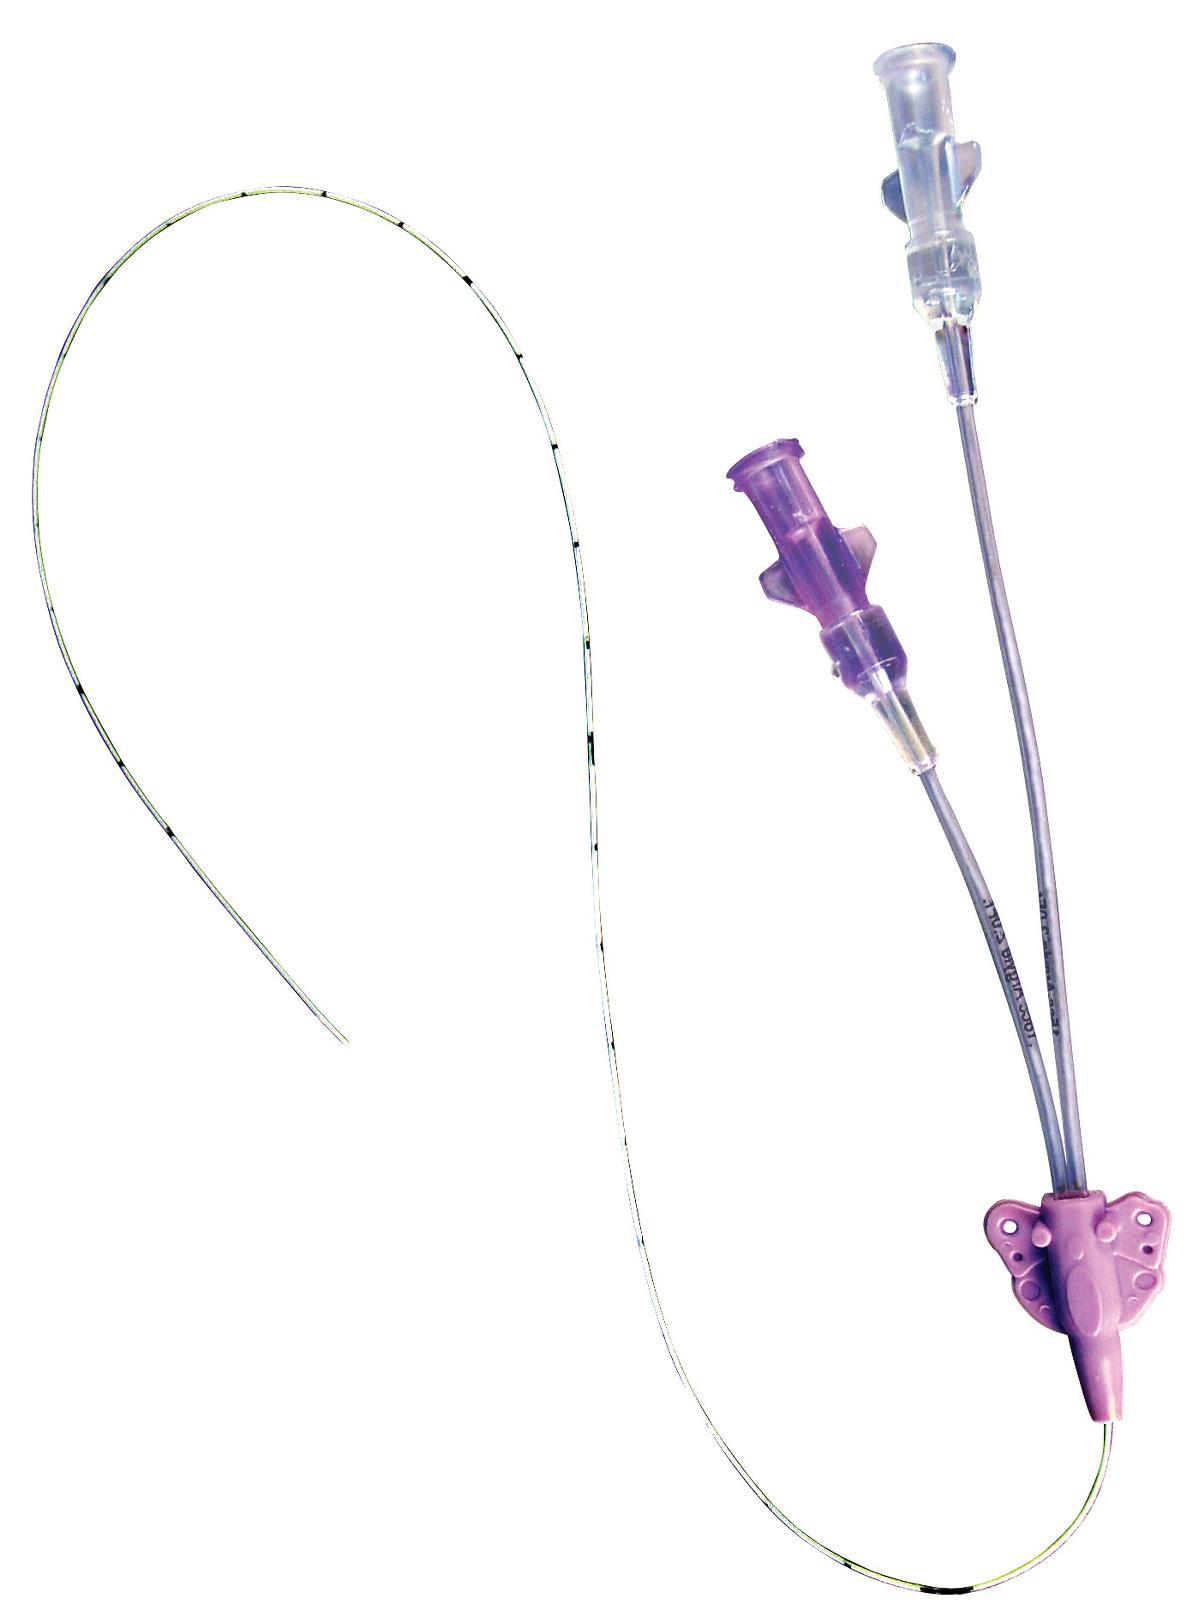 picc catheter